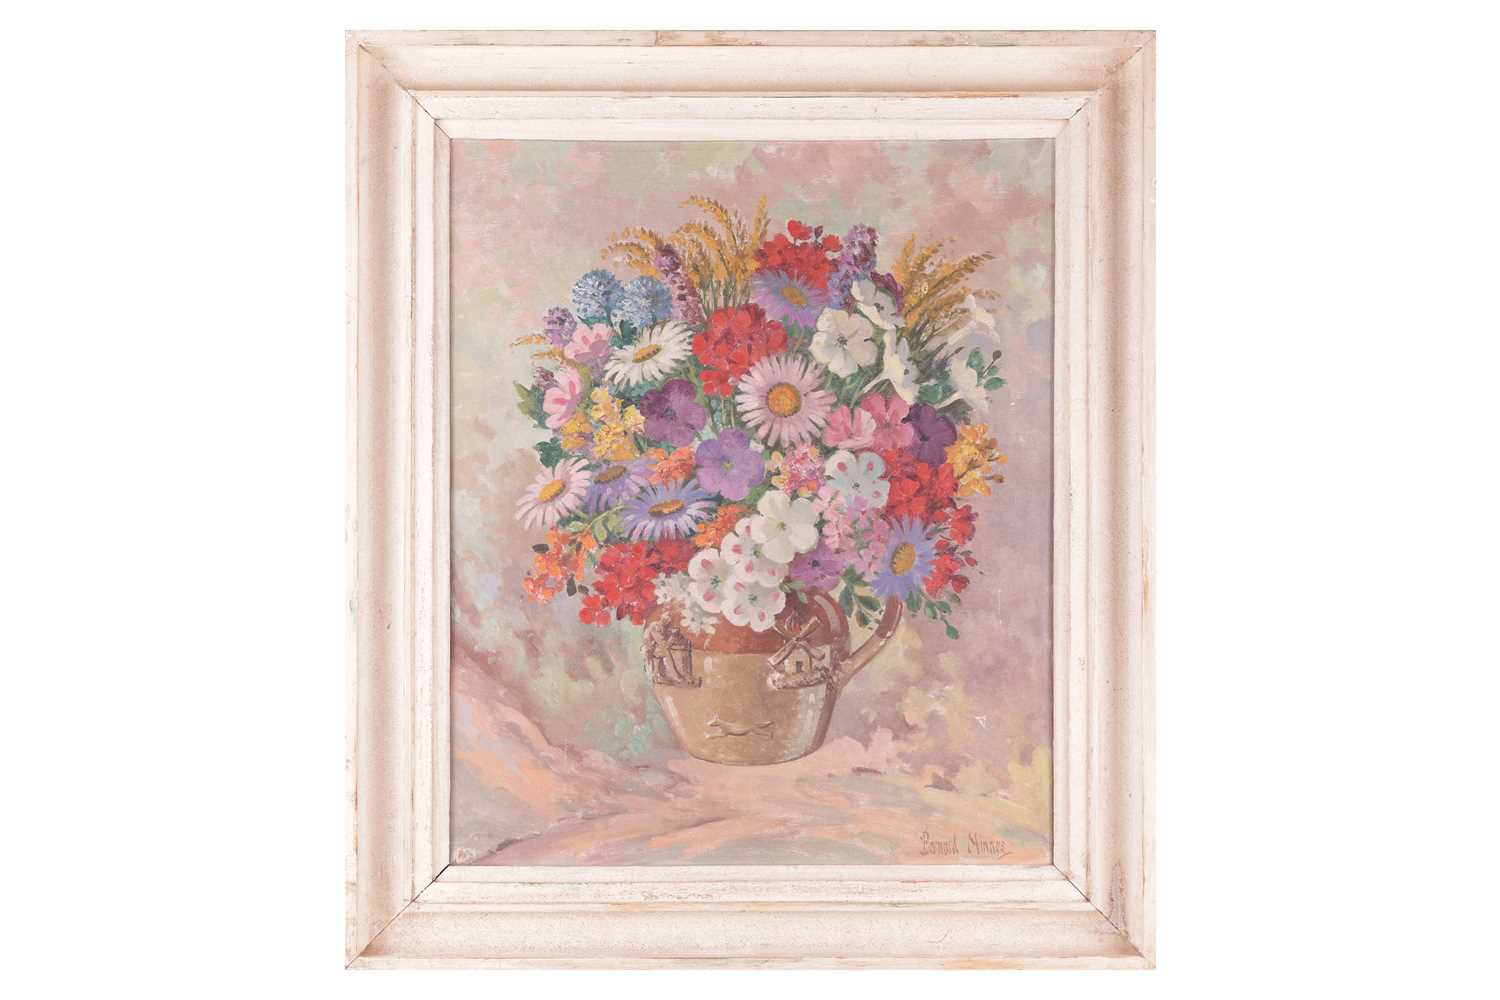 Bernard Ninnes (1899-1971), Jug of flowers, signed 'Bernard Ninnes' (lower right), oil on canvas, 61